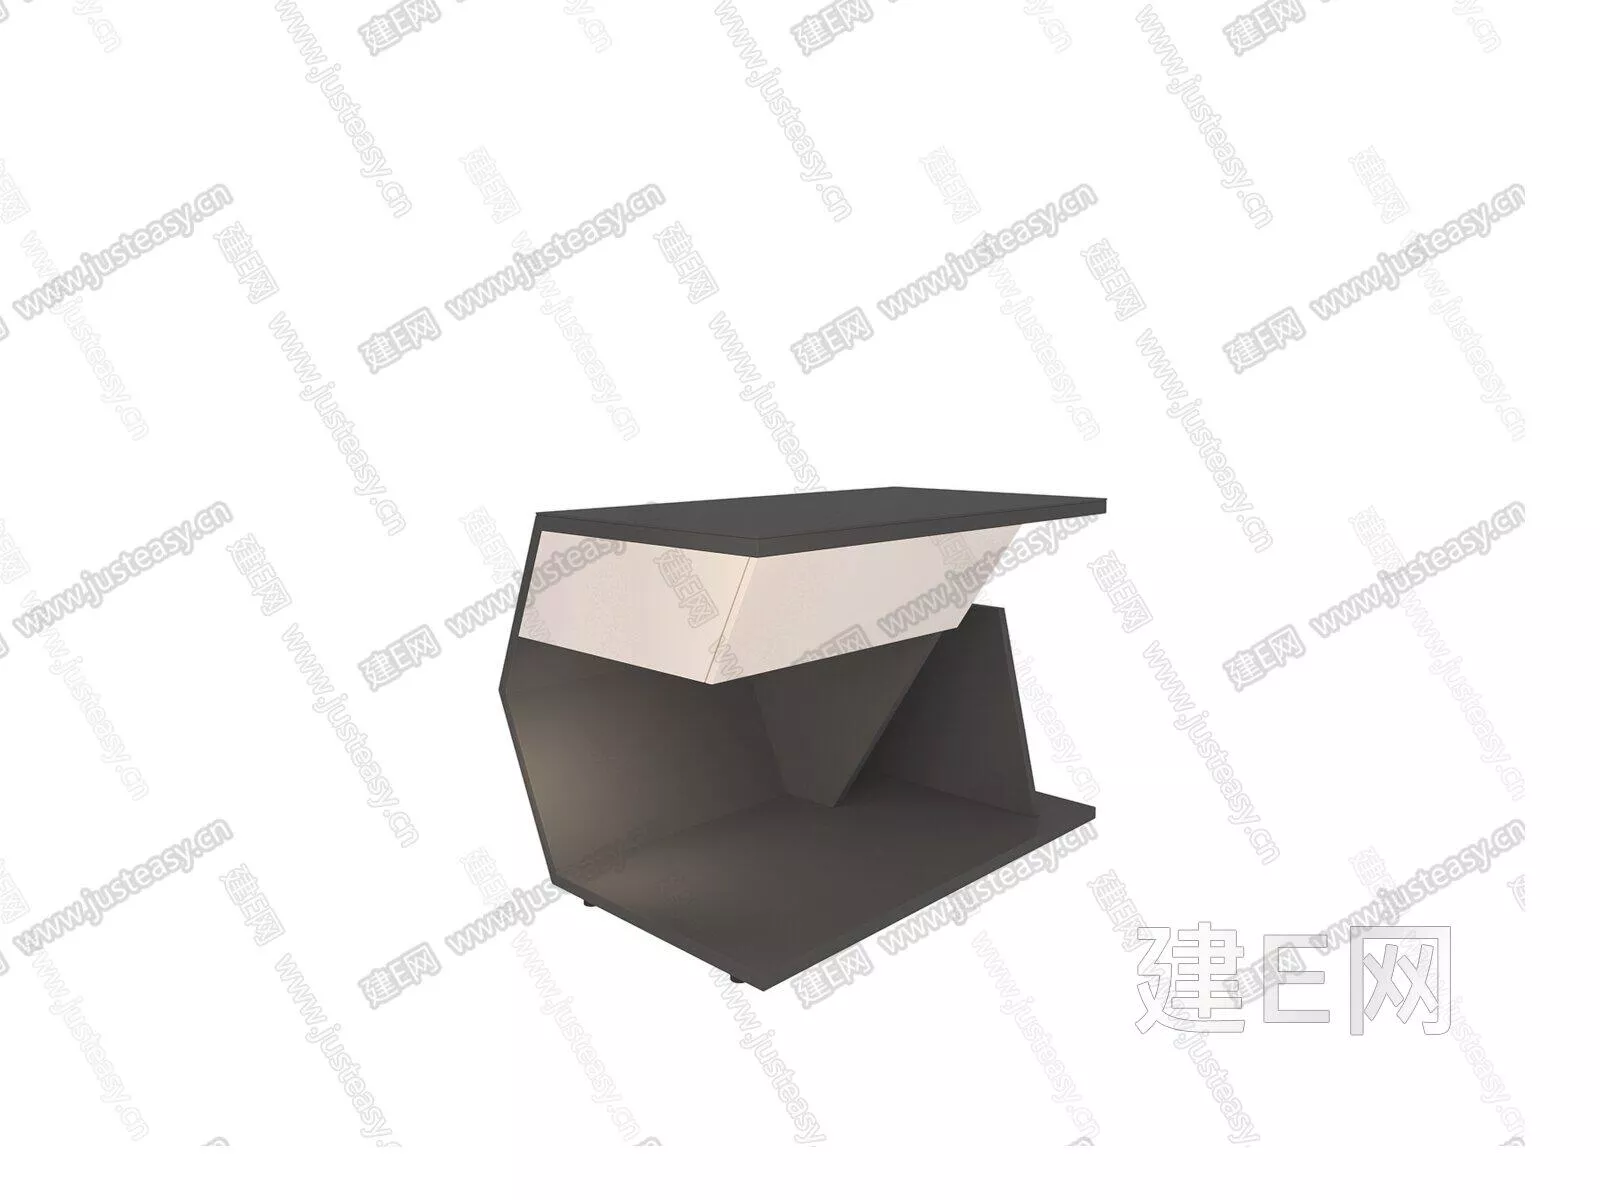 MODERN BEDSIDE TABLE - SKETCHUP 3D MODEL - ENSCAPE - 105269271